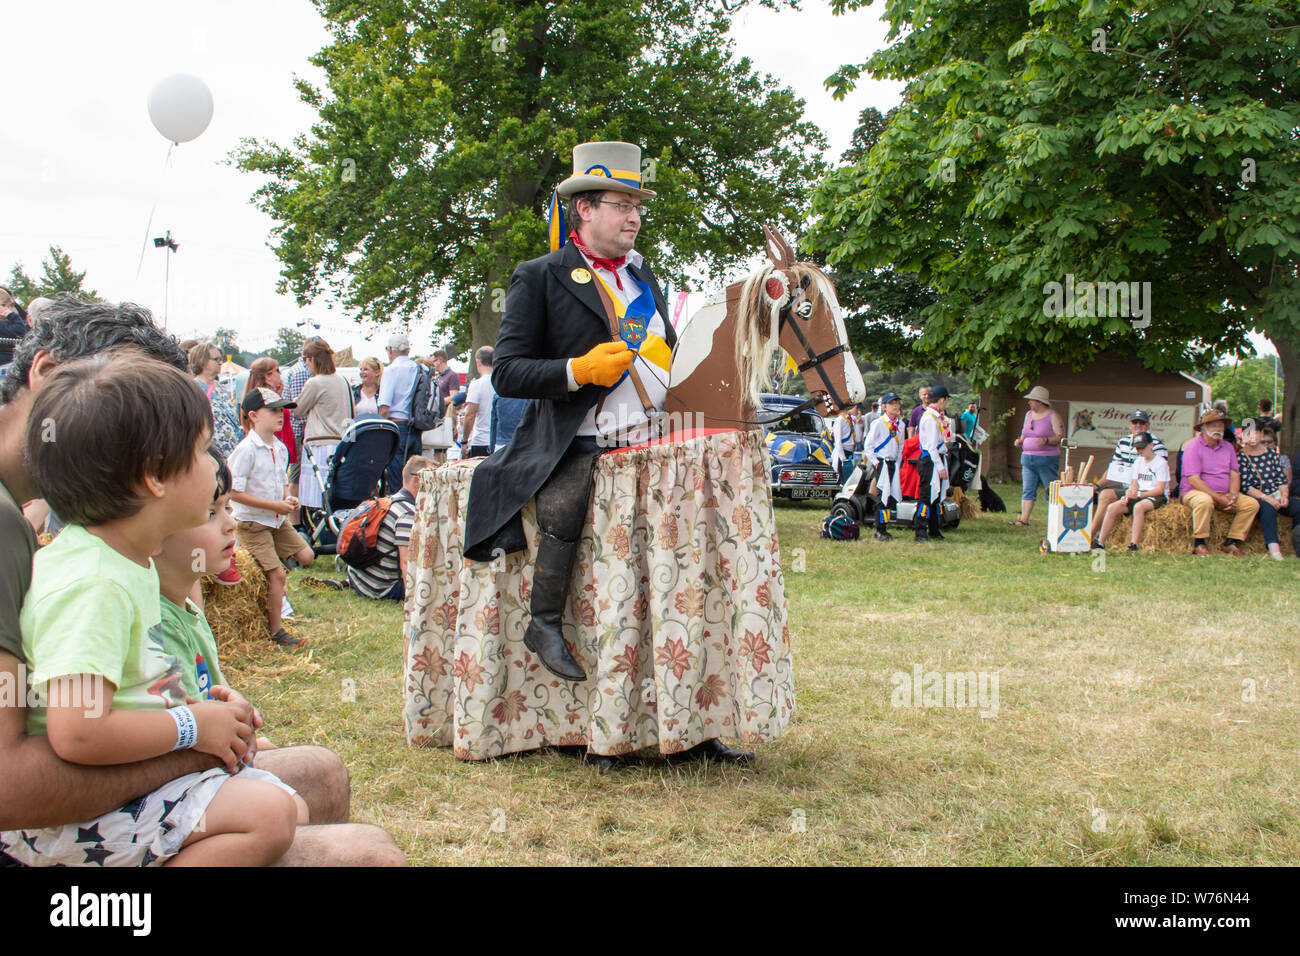 Le hobby Horse, une partie de l'Illmington traditionnel morris men groupe de danseurs divertissant la foule lors de la Live Show 2019 Countryfile, UK Banque D'Images